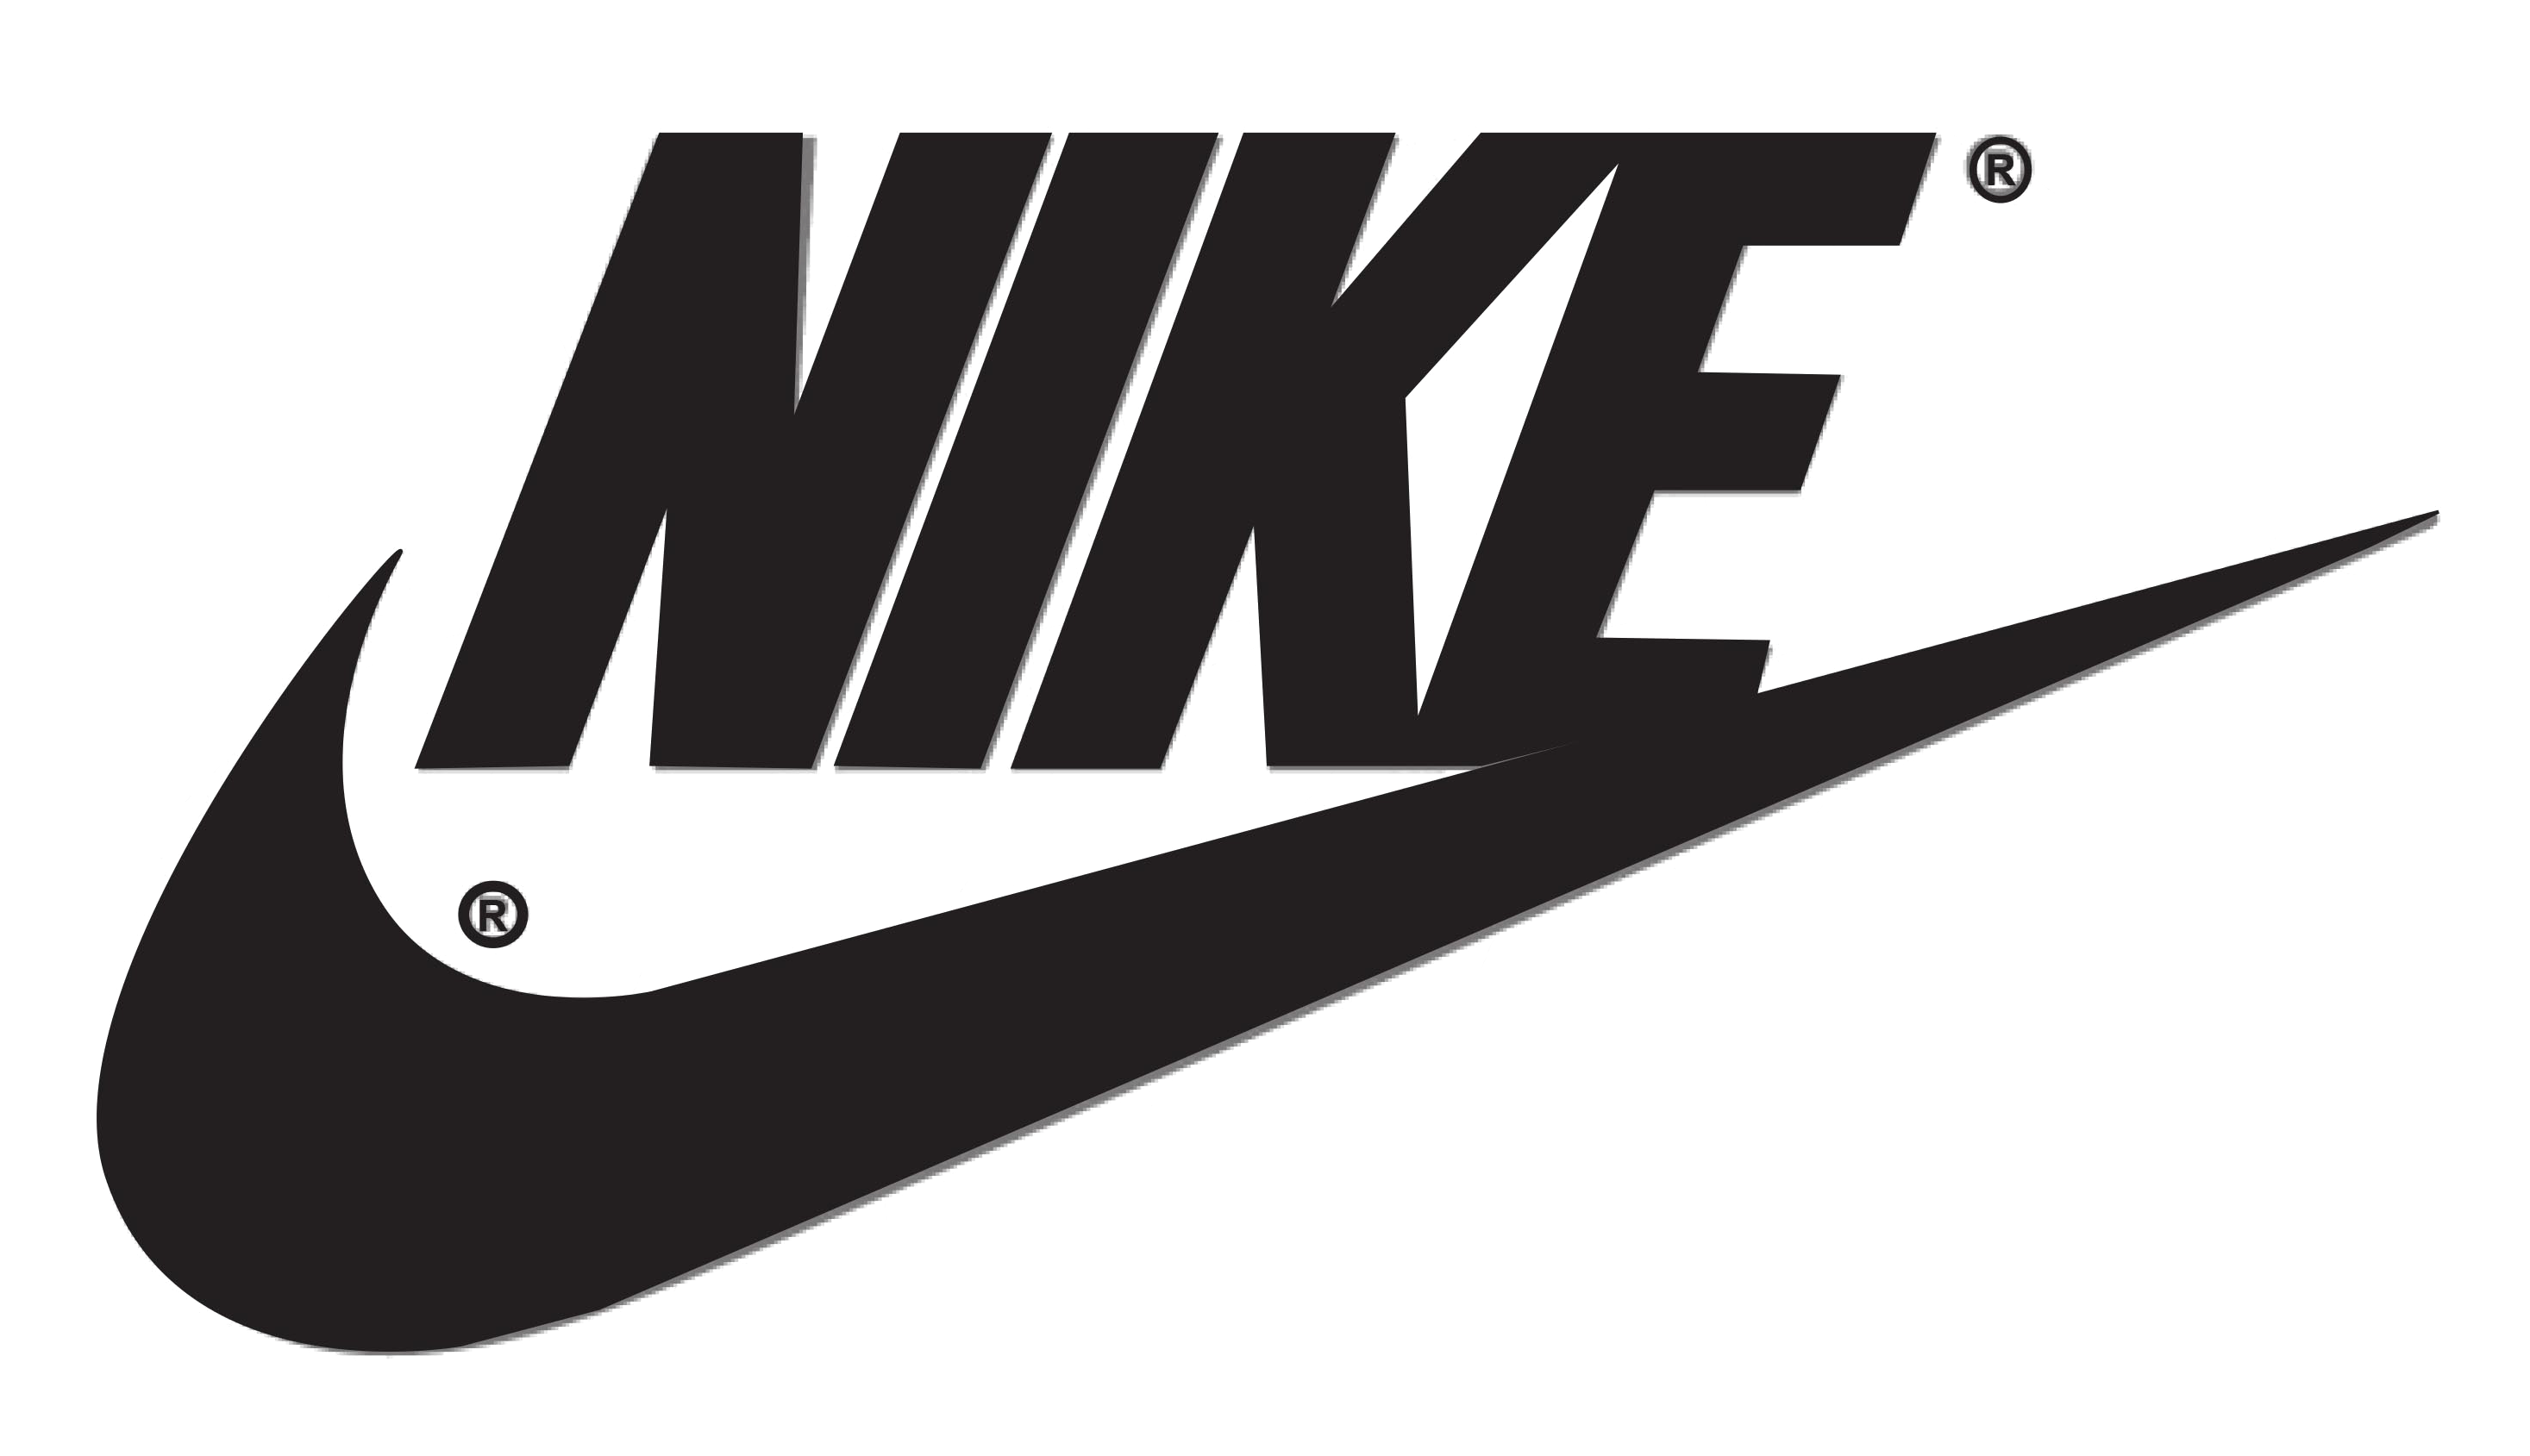 Swoosh Nike Logo - Nike logo PNG png download - 2934*1689 - Free ...